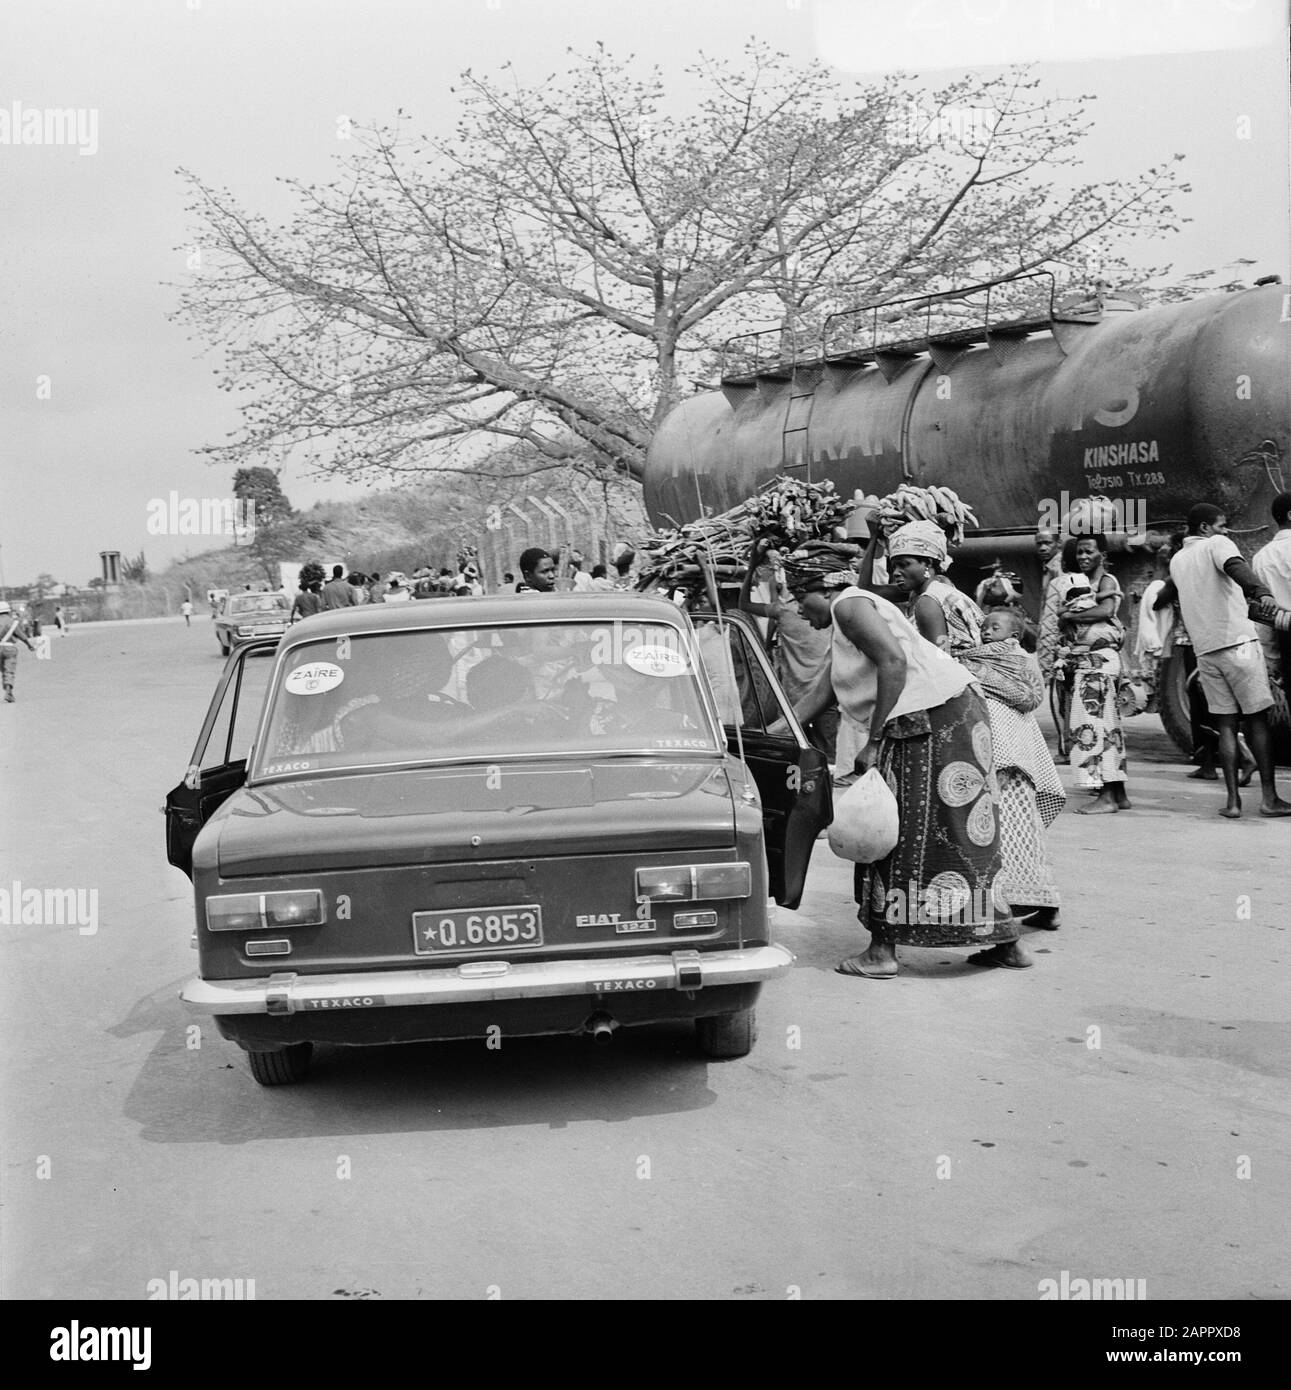 Zaire (ehemals Belgischer Kongo) Straße auf dem Land Datum: 24. Oktober 1973 Ort: Kongo, Zaire Schlüsselwörter: Autos, Eisenbahn, Verkehr, Züge, Straßen Stockfoto